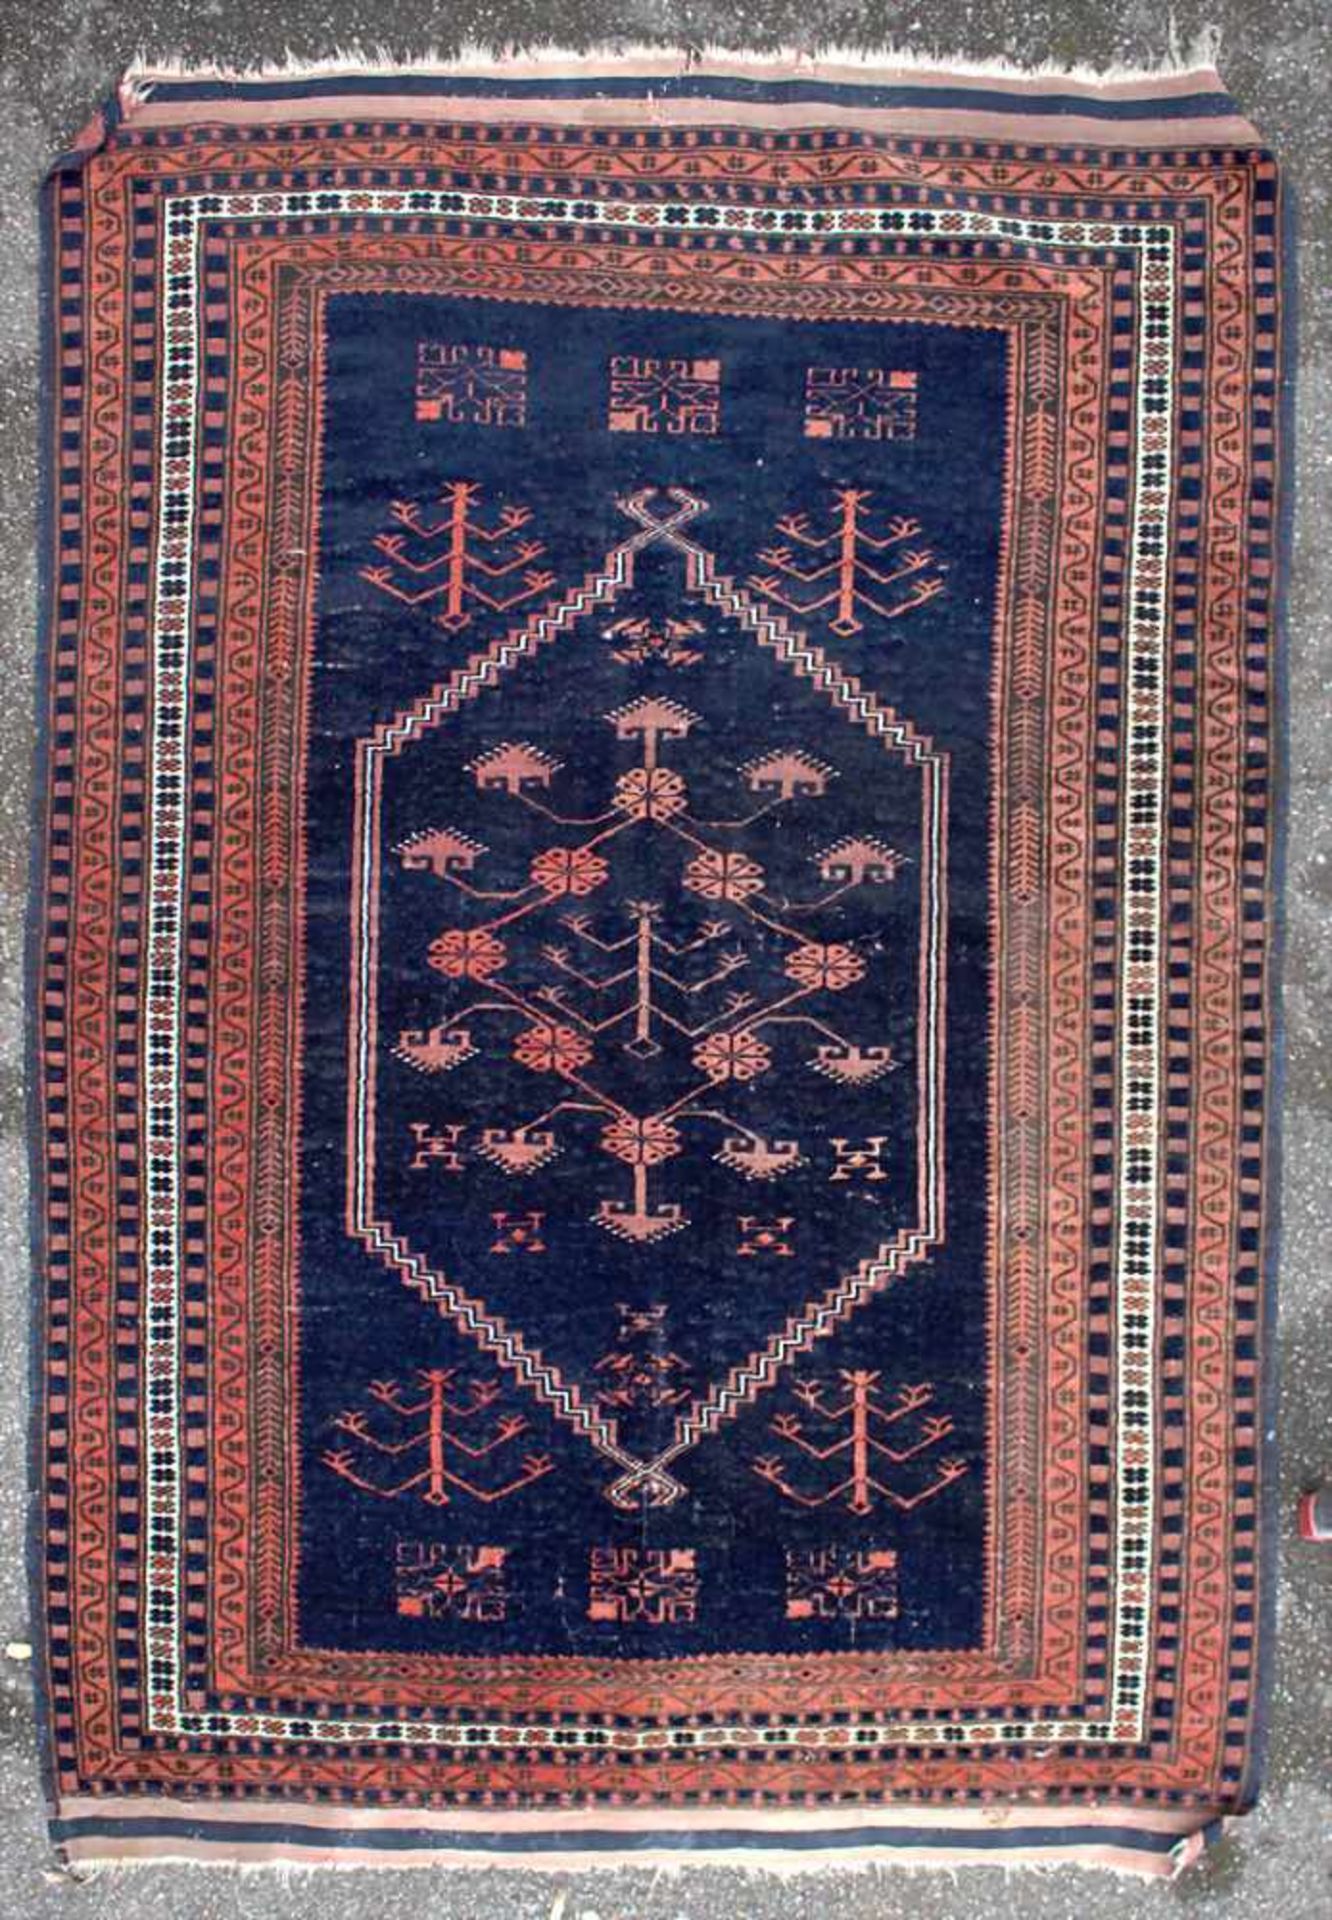 Orientteppich / An oriental carpetMaterial: Wolle auf Baumwolle, Naturfarben, Maße: 160 x 110 cm, - Image 6 of 7